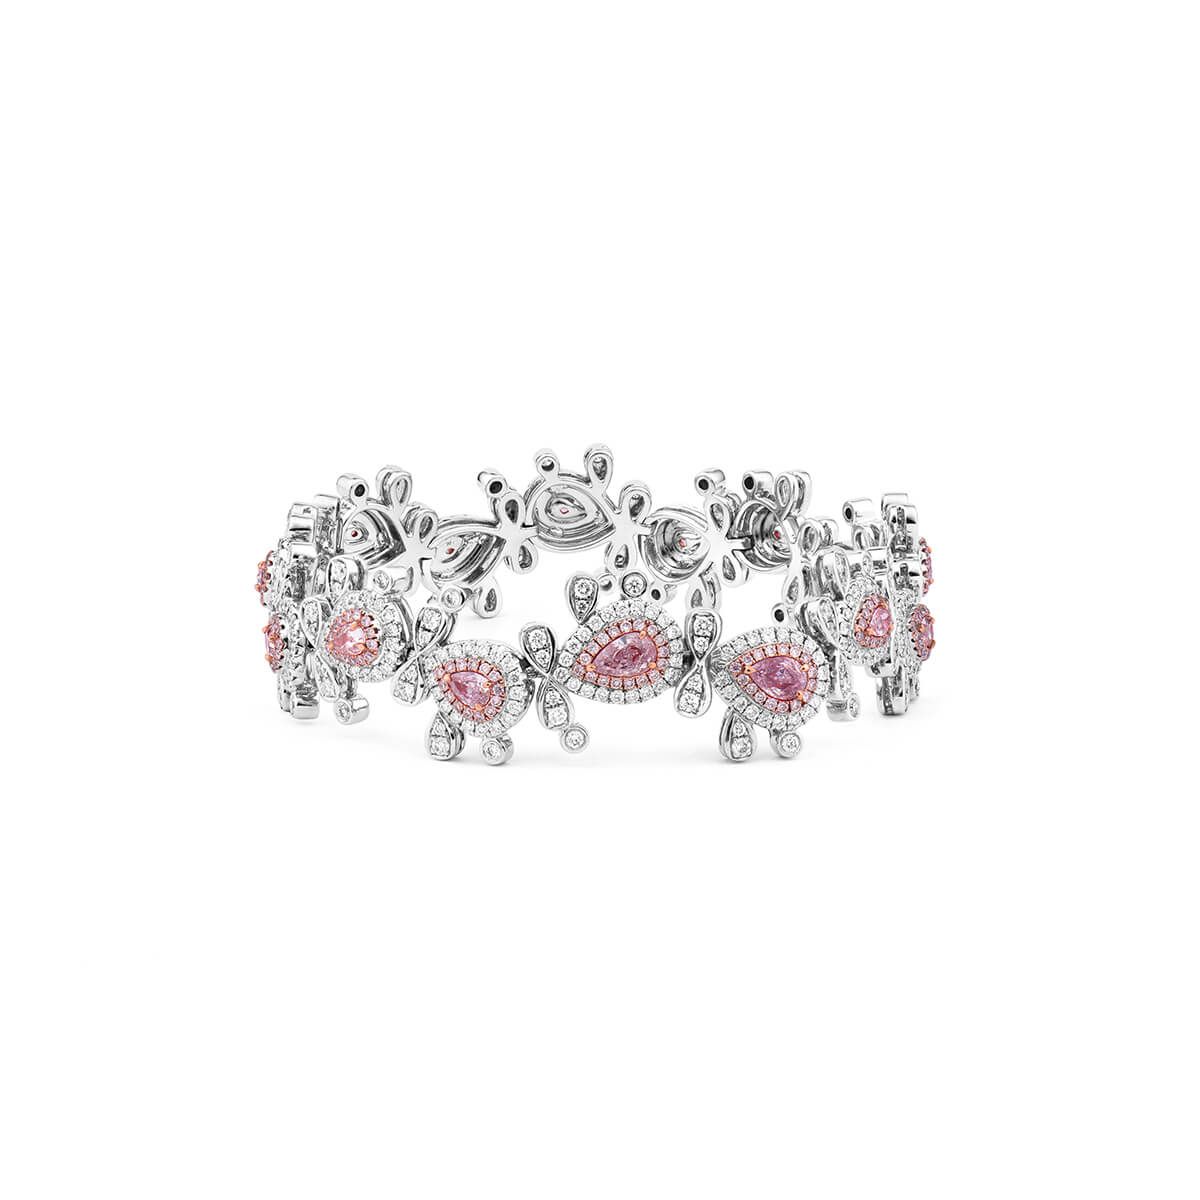 Fancy Light Pink Diamond Bracelet, 2.05 Ct. (6.03 Ct. TW), Pear shape, GIA Certified, JCBF05409126